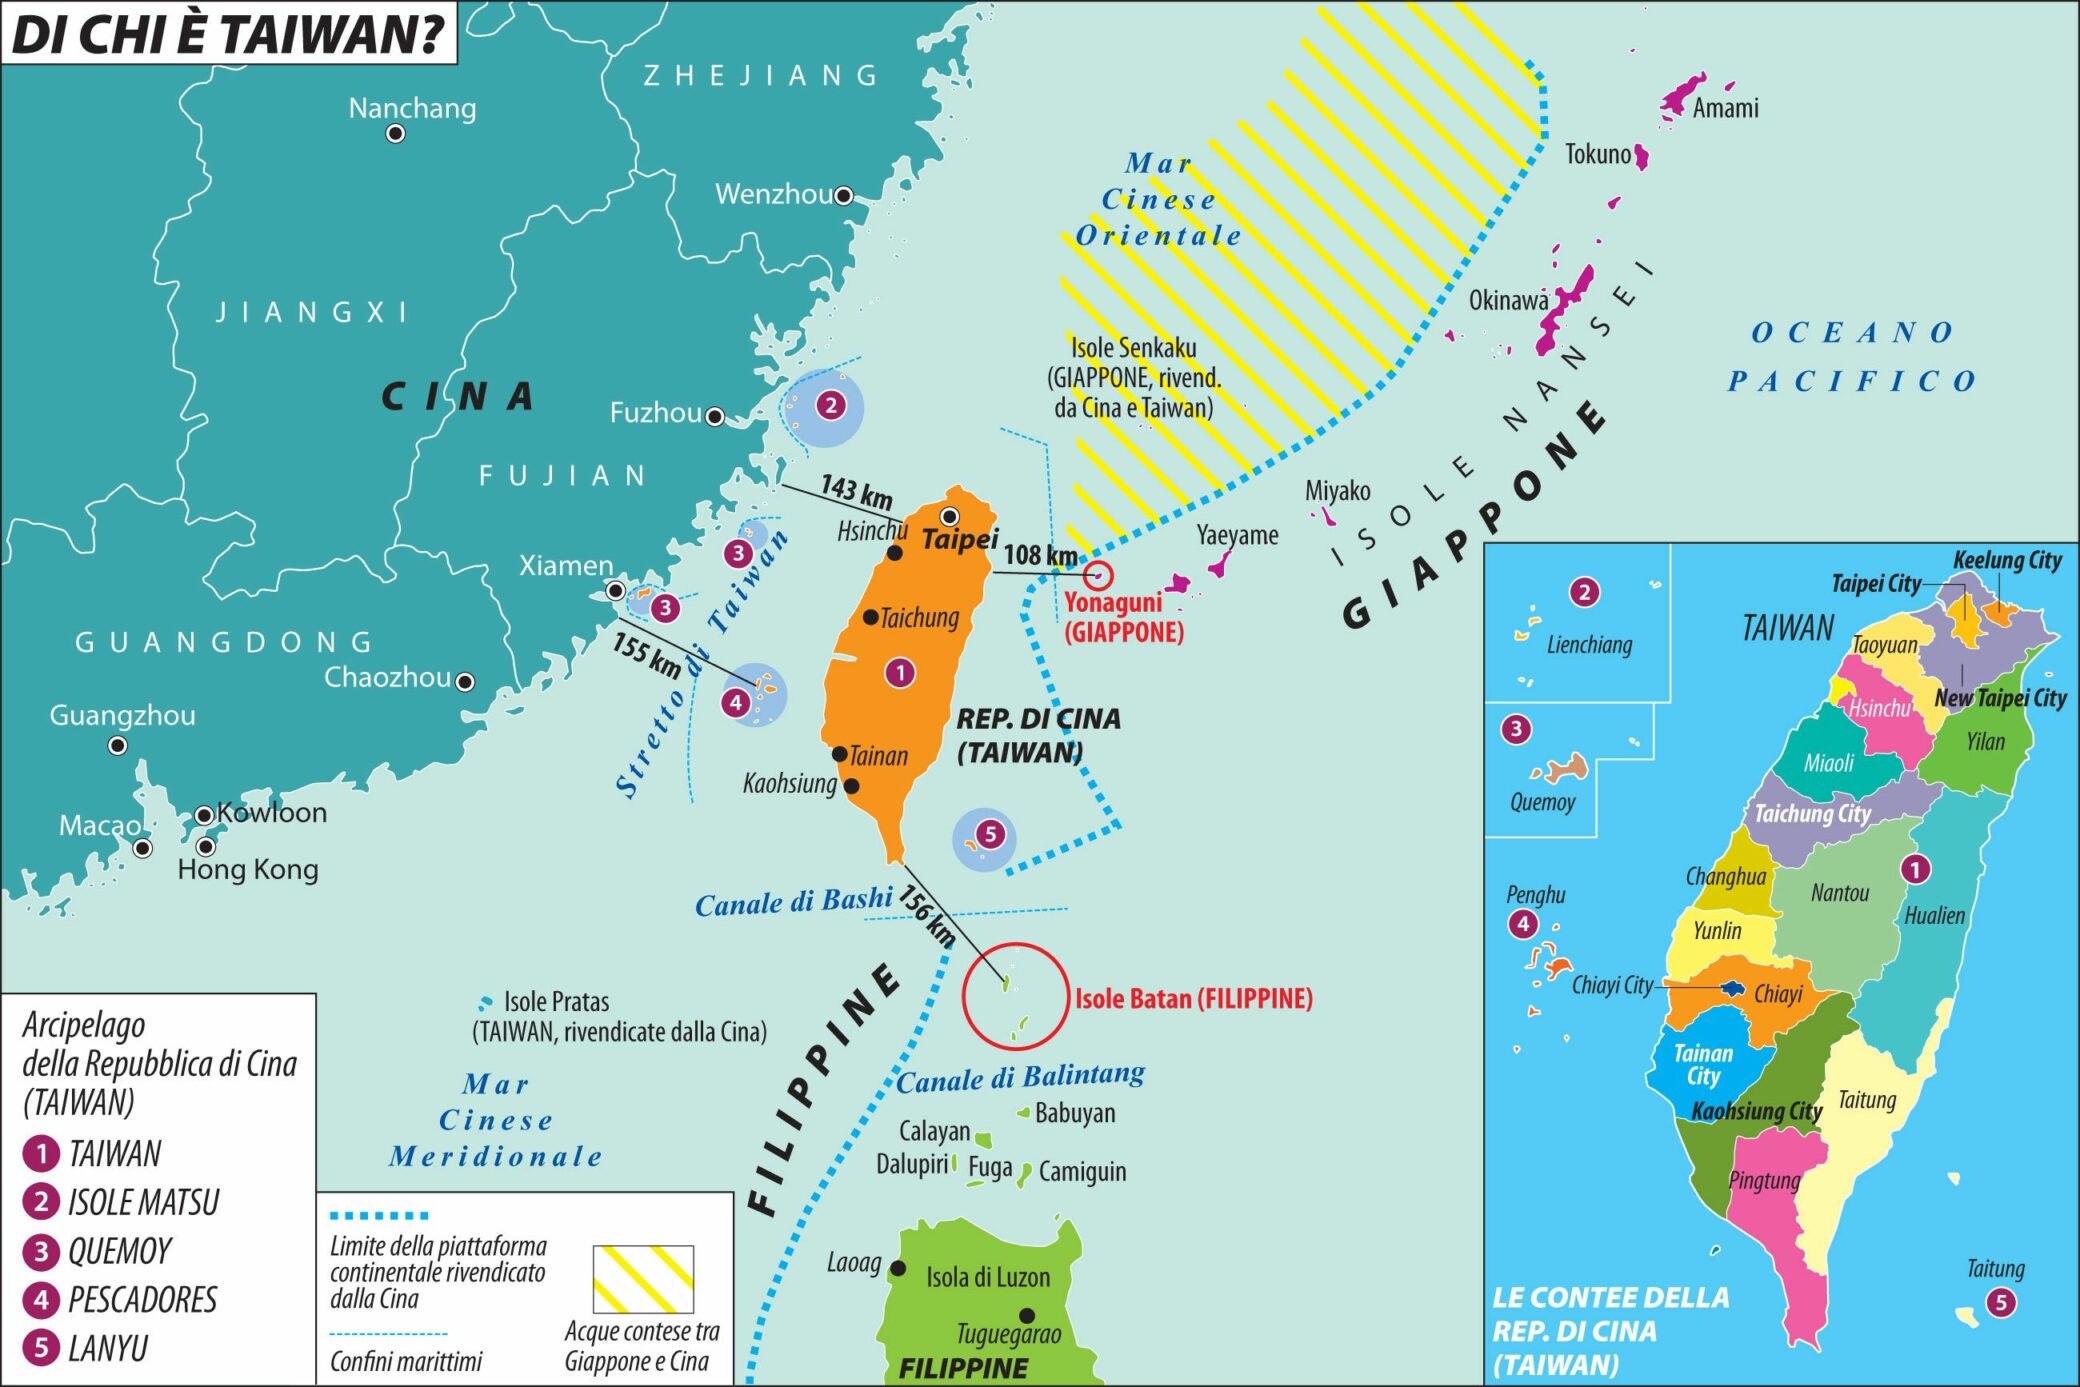 Cartina politica, che mostra i territori della cosiddetta "Repubblica di Cina" (Taiwan).